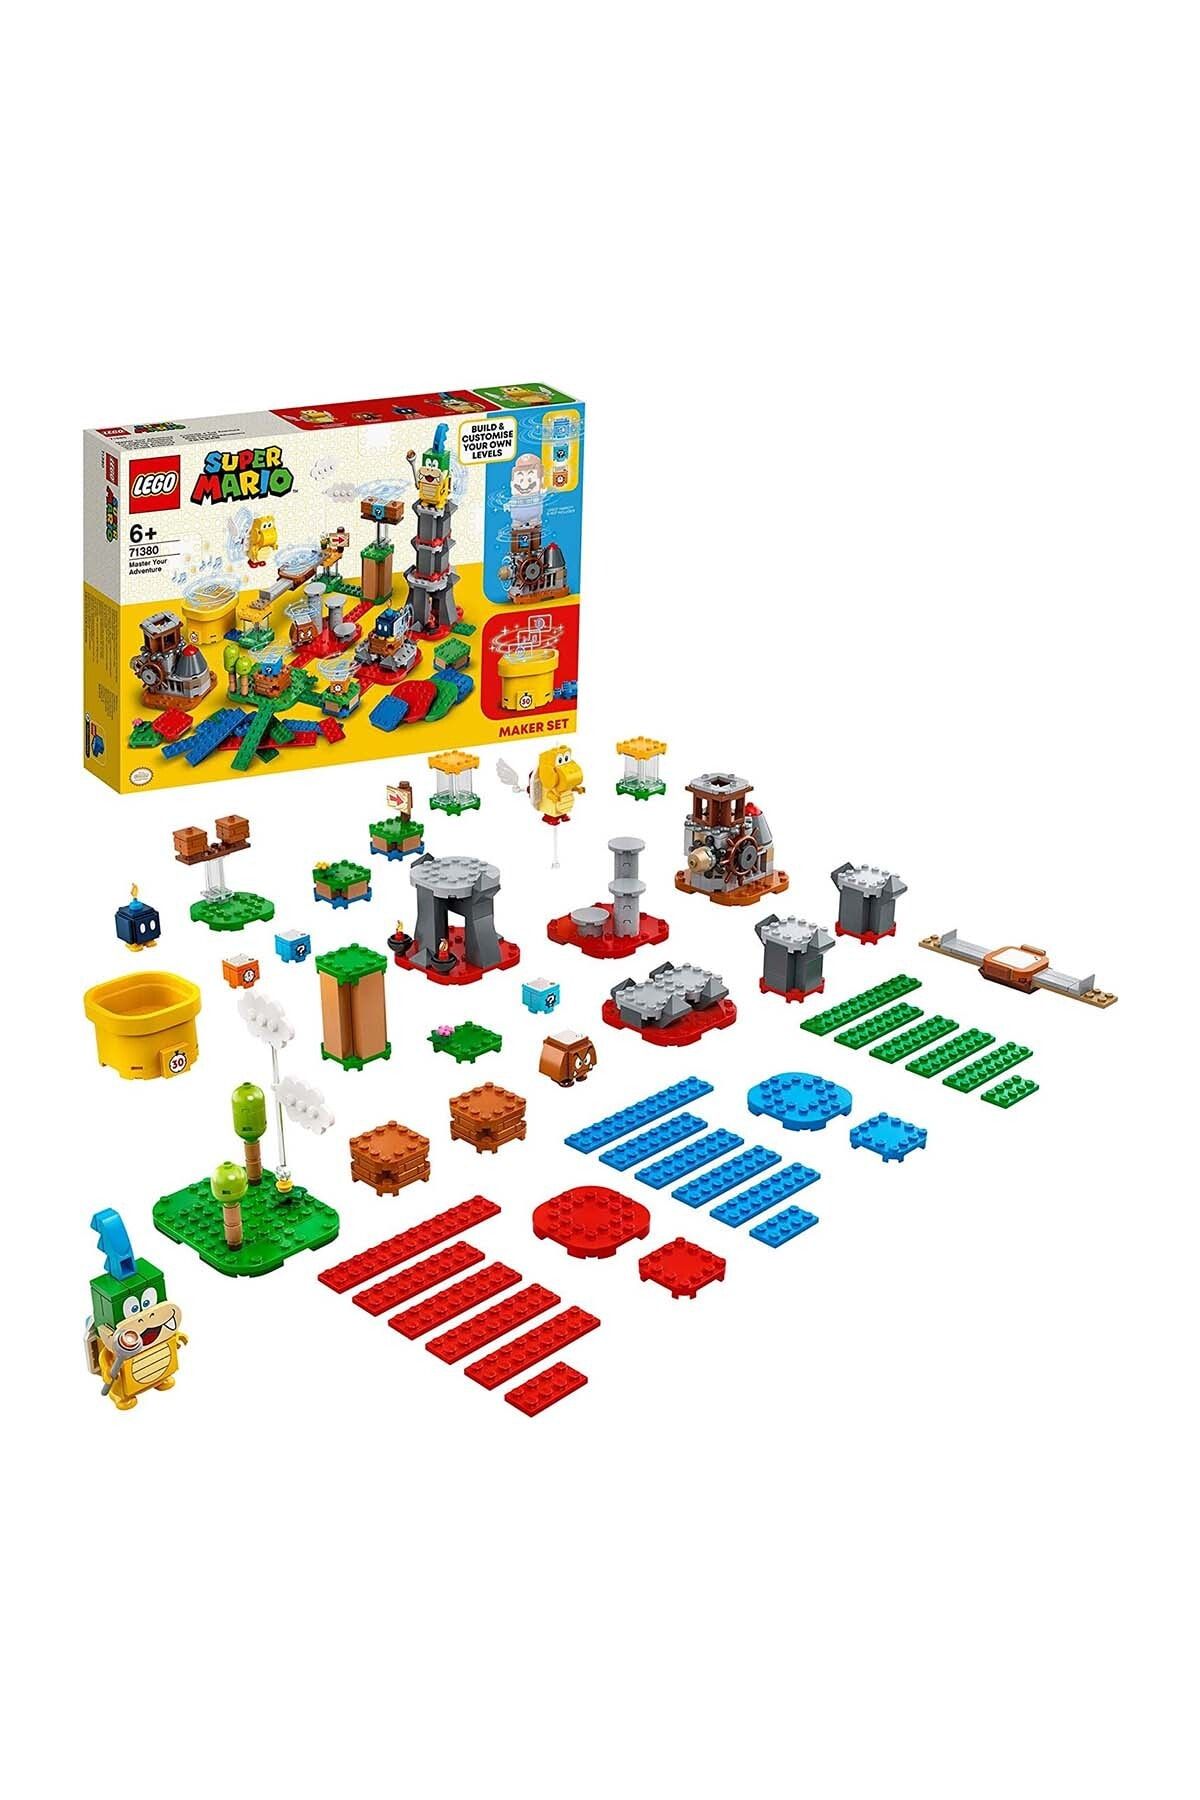 LEGO Super Mario Usta Maceracı Yapım Seti 71380 - Yaratıcı Çocuklar Için Koleksiyonlu